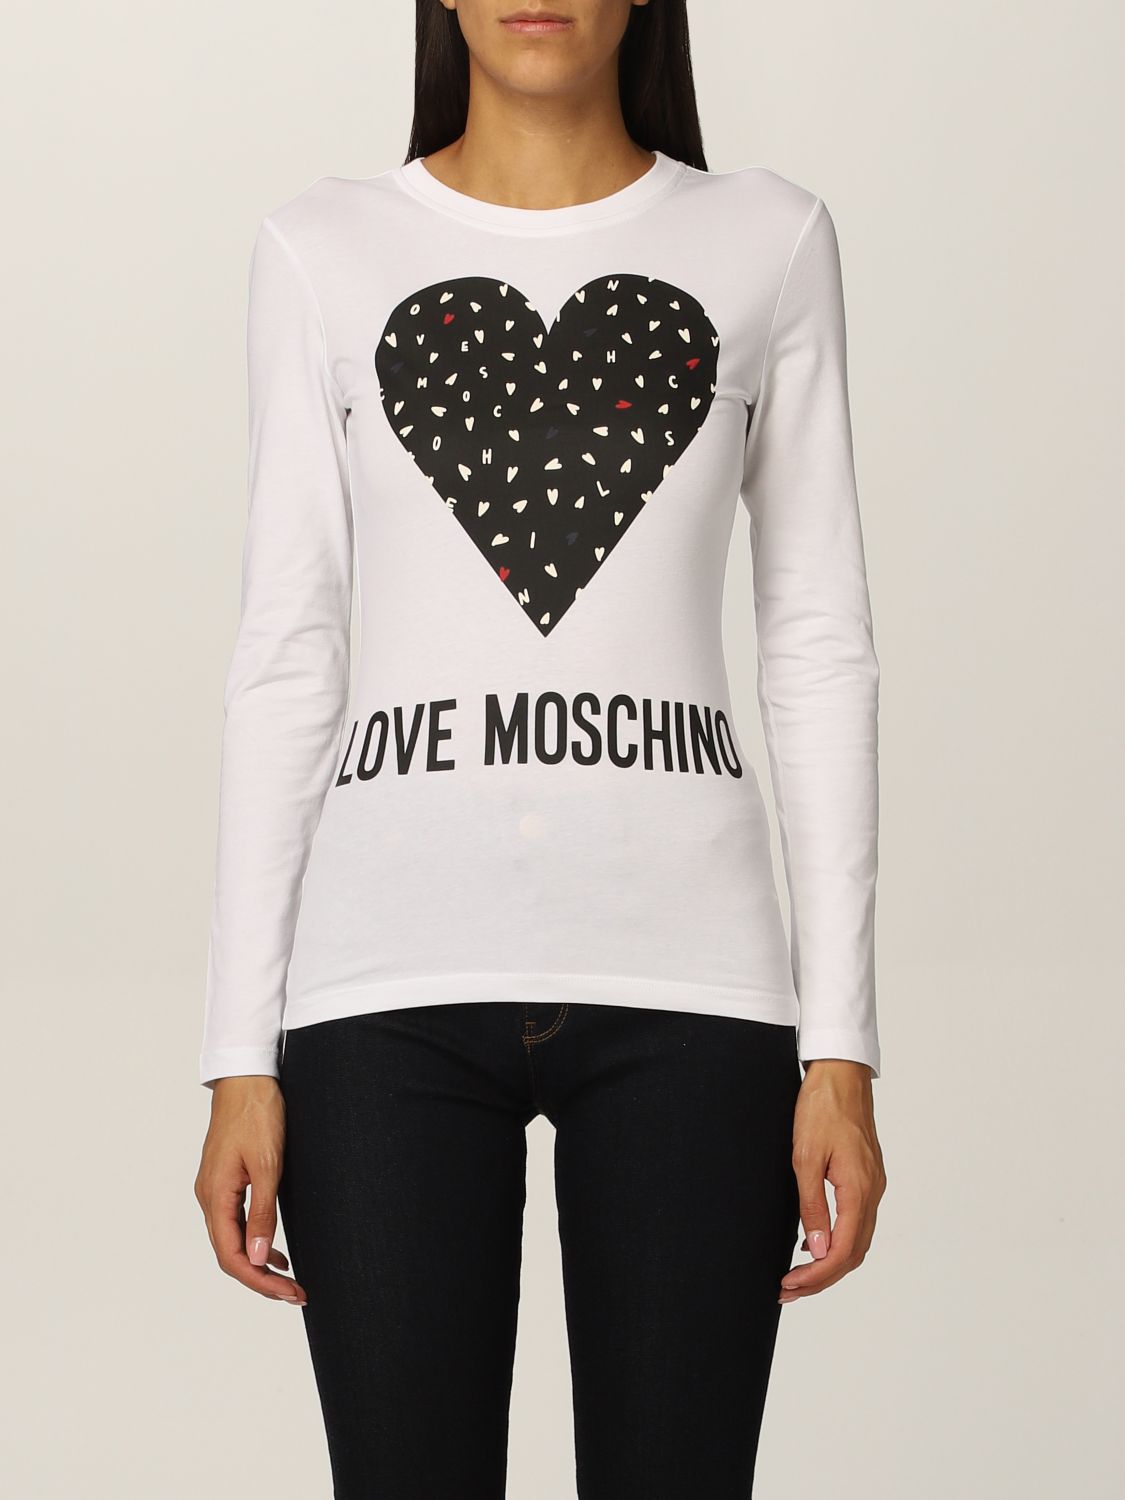 Maglie a manica lunga T-shirt, top e bluse Abbigliamento Love Moschino ...